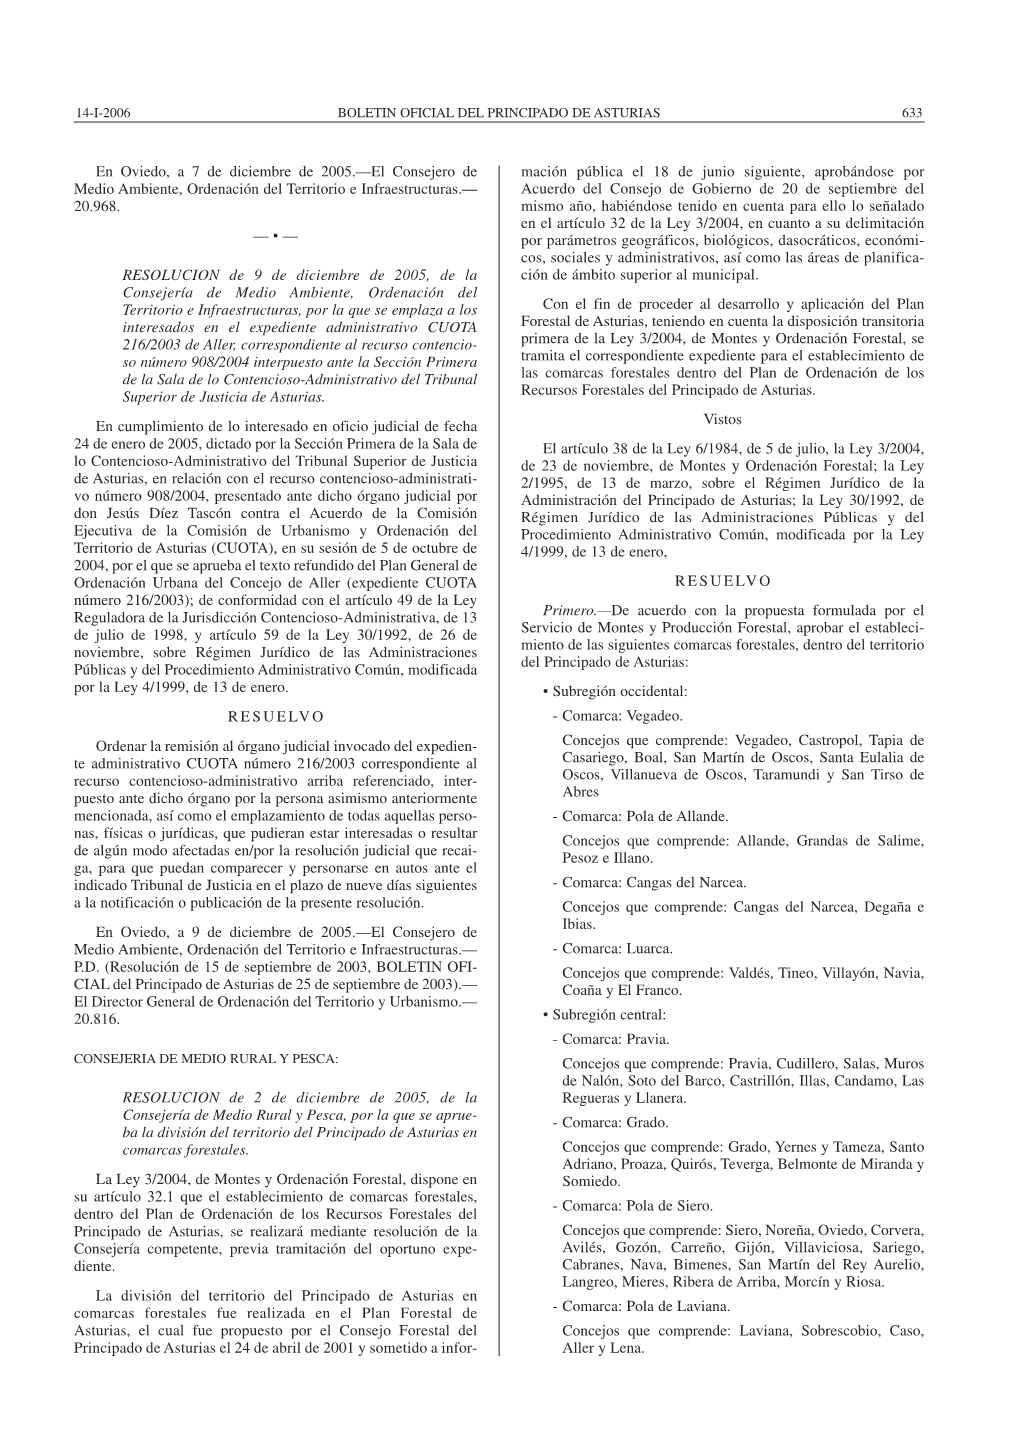 En Oviedo, a 7 De Diciembre De 2005.—El Consejero De Medio Ambiente, Ordenación Del Territorio E Infraestructuras.— 20.968